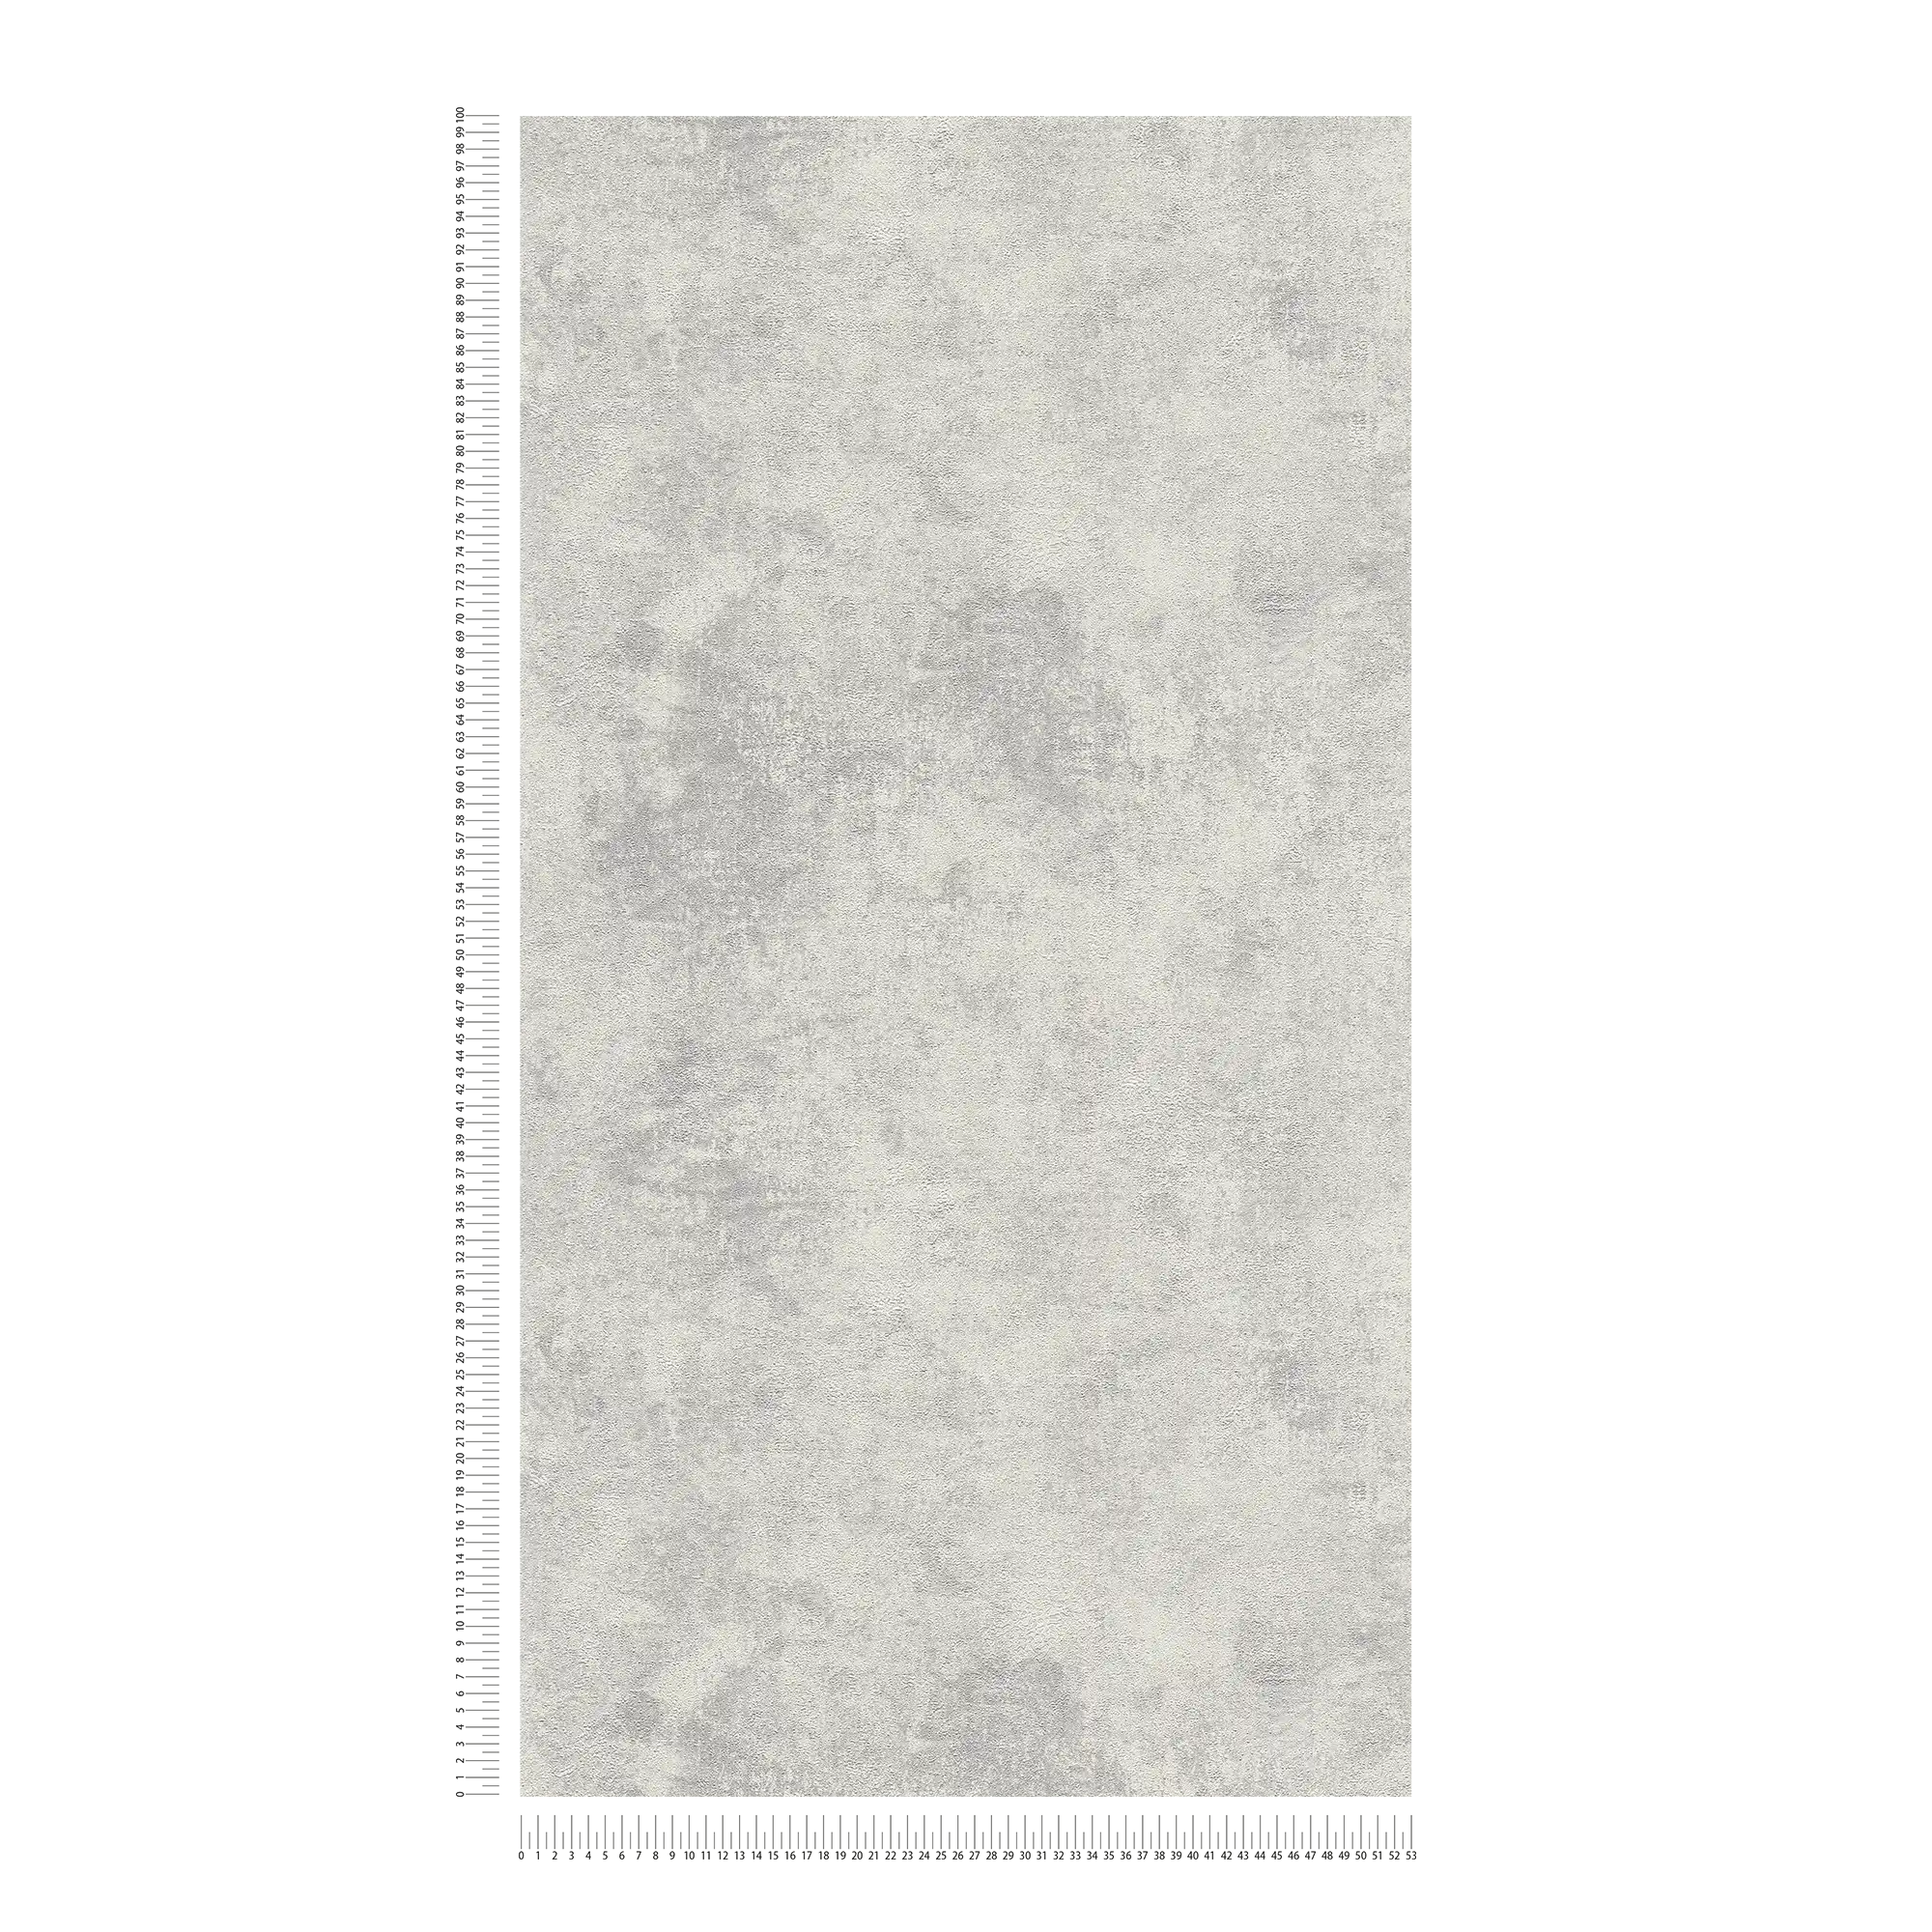             Papier peint intissé avec optique de crépi de vitres et motif structuré - gris, argenté
        